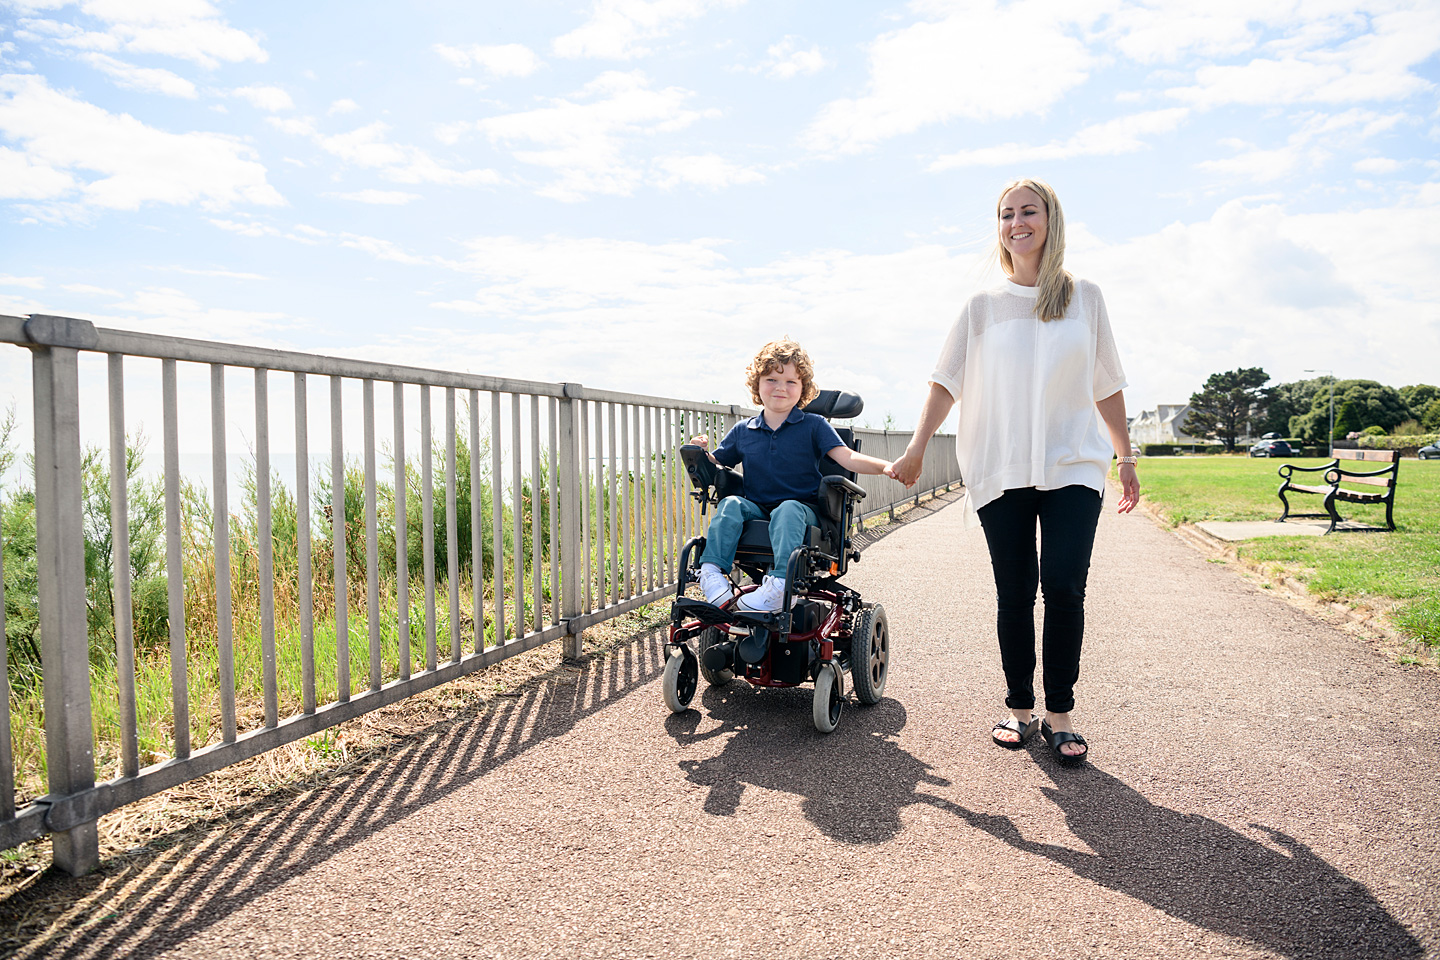 Mutter geht Hand in Hand mit ihrem Kind, das wegen einer Behinderung im Rollstuhl sitzt, spazieren.